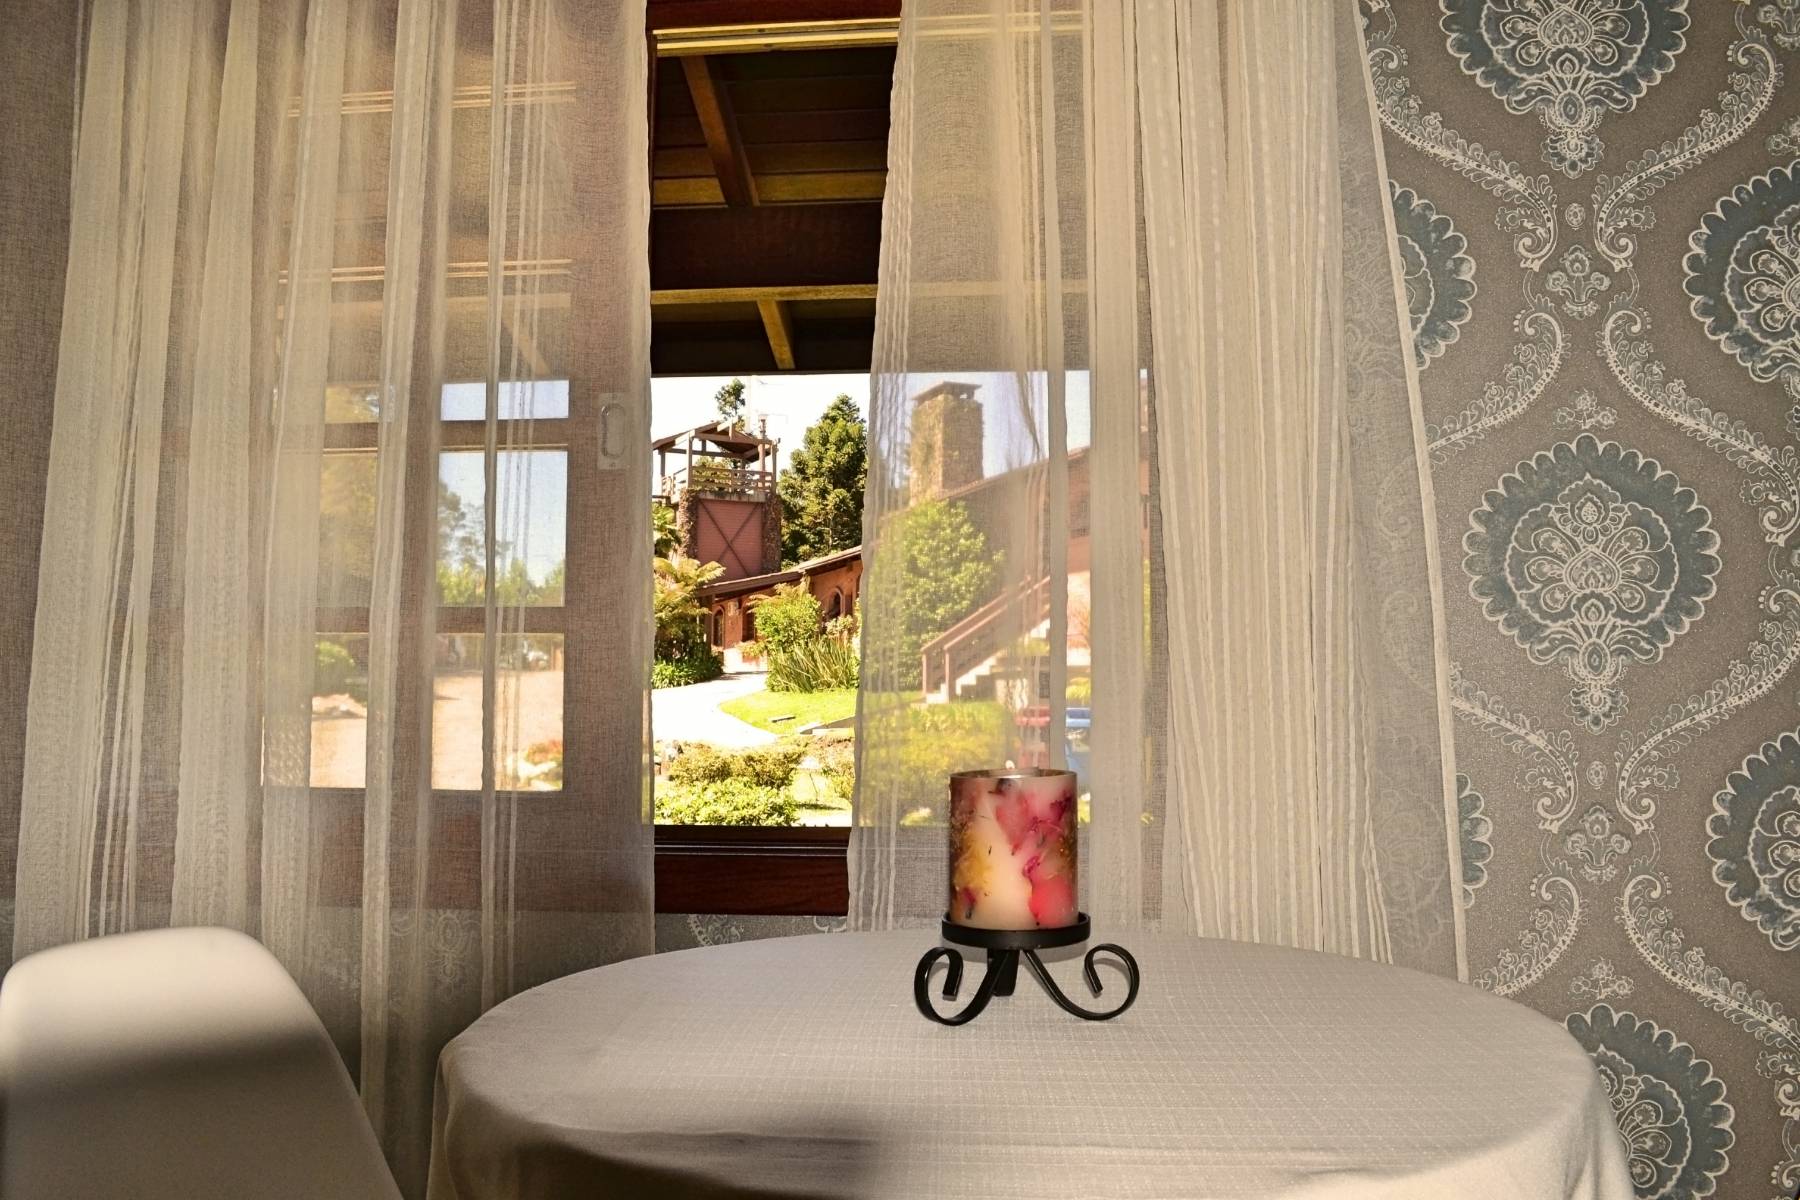 Bangalô Amor Perfeito - Acomodações do Hotel Bangalôs da Serra em Gramado #CurtaSuaFamilia #HotelSustentavel #TurismoVerde #TravelersChoice #EcoLider #Gramado #SerraGaucha